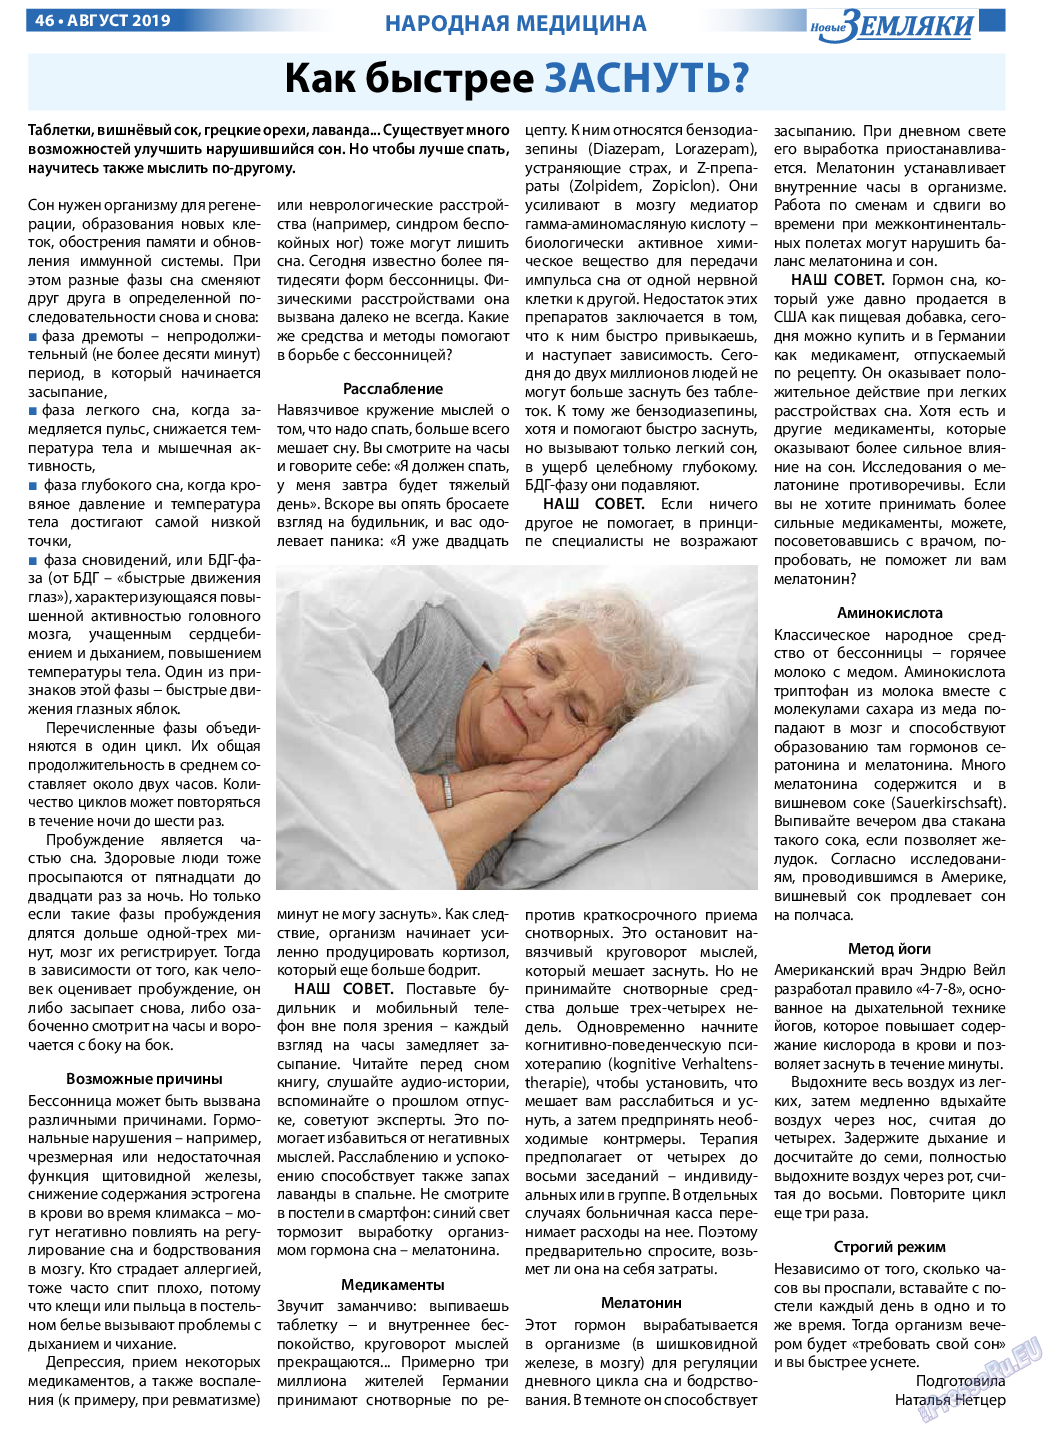 Новые Земляки, газета. 2019 №8 стр.46